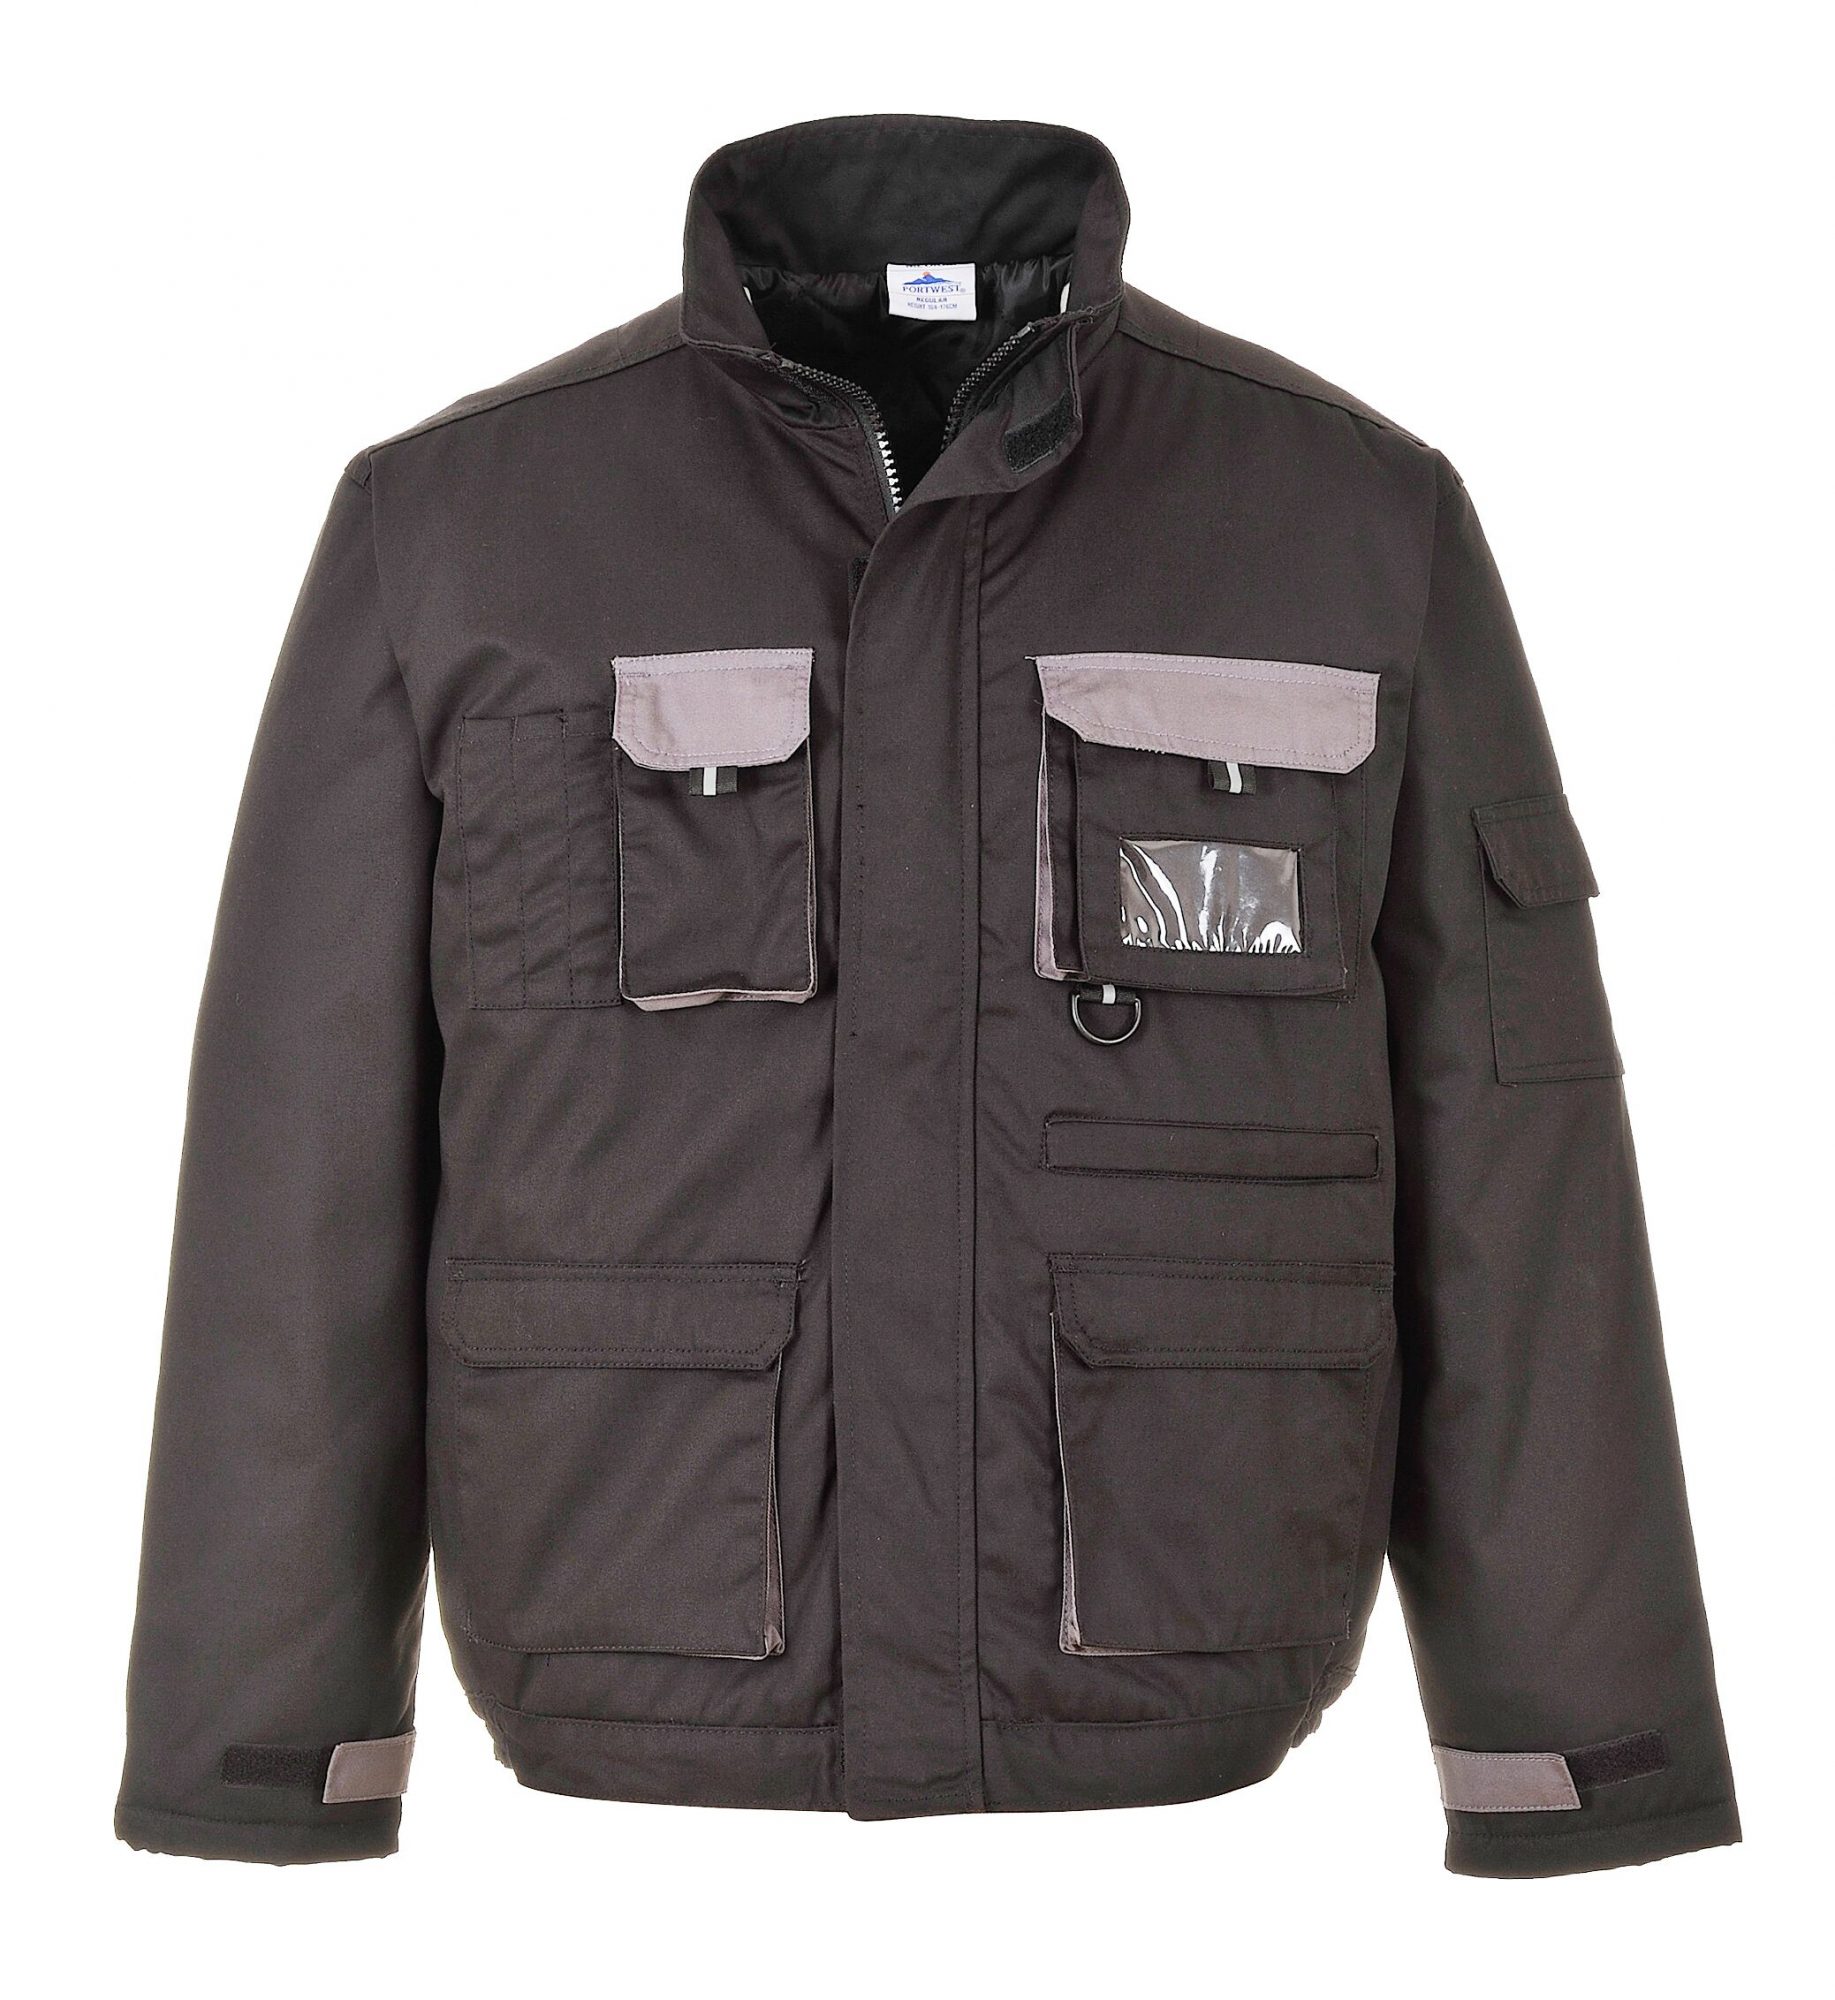 Jacket lines. Куртка Портвест. Рабочая куртка Portwest t603, черный/серый. Куртка Portwest tx10, чёрный / серый производитель. Куртка со множеством карманов (RS Multi-Pocket), Portwest.